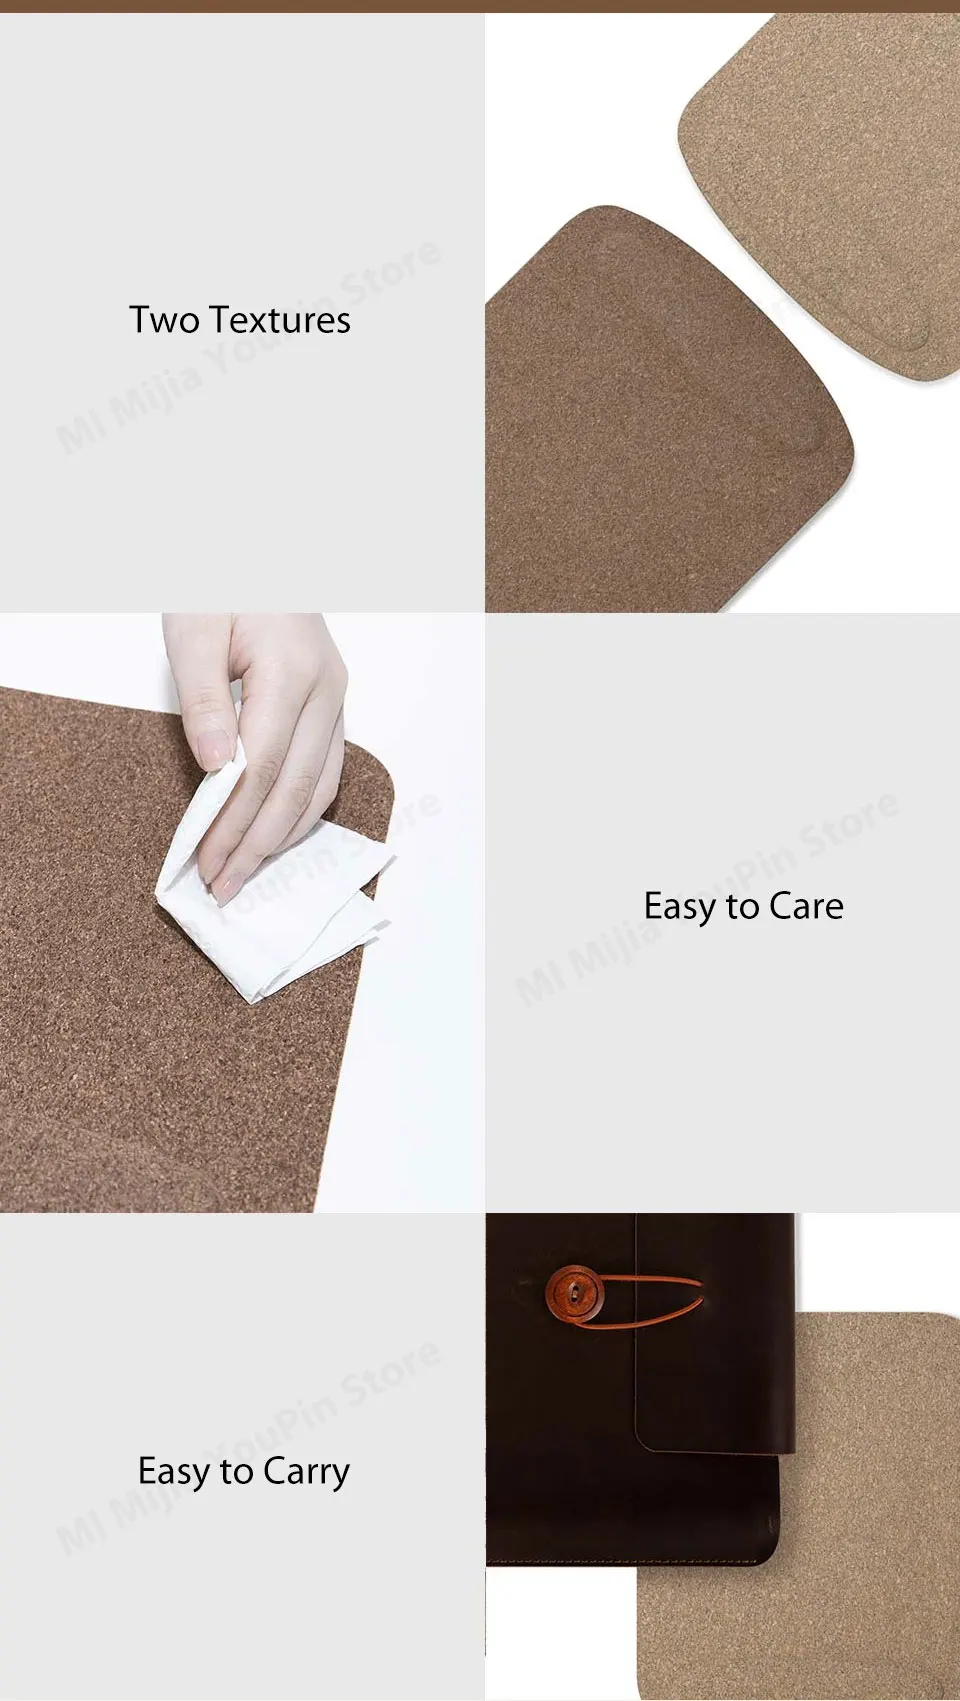 Xiaomi Youpin коврик для мыши водонепроницаемый кожаный дружественный дубовое покрытие эргономичный коврик для мыши с опорой для запястья для проводной беспроводной игровой мыши